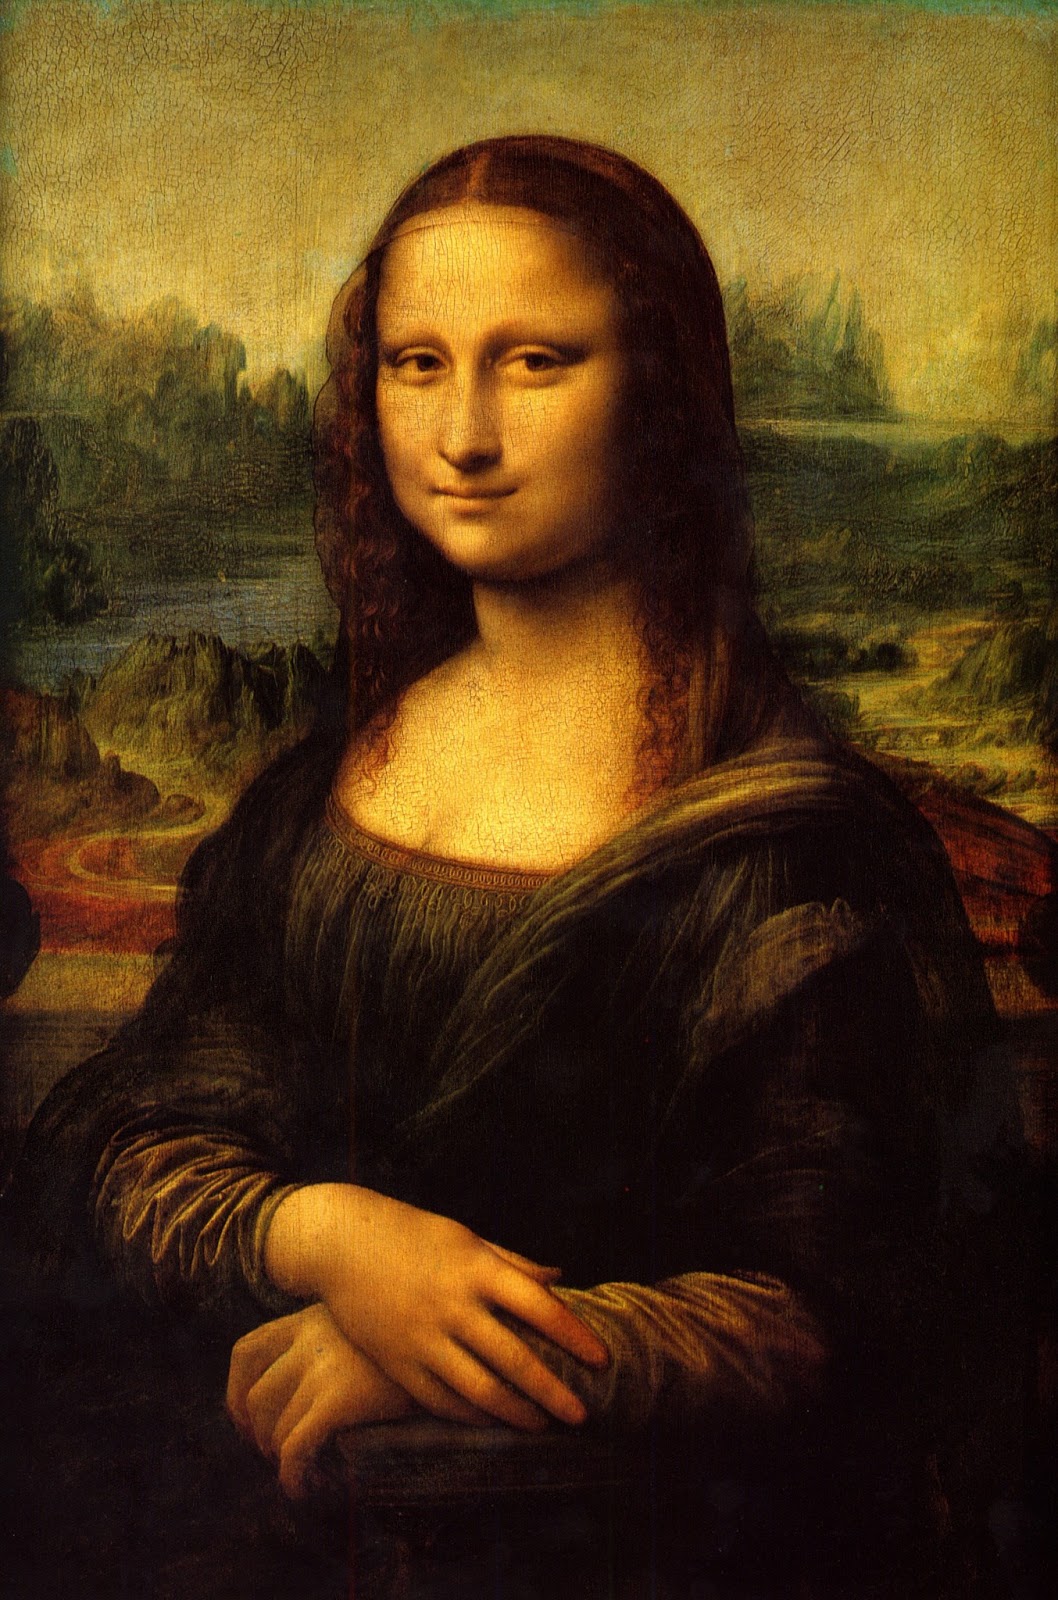 La Gioconda, Leonardo Da Vinci